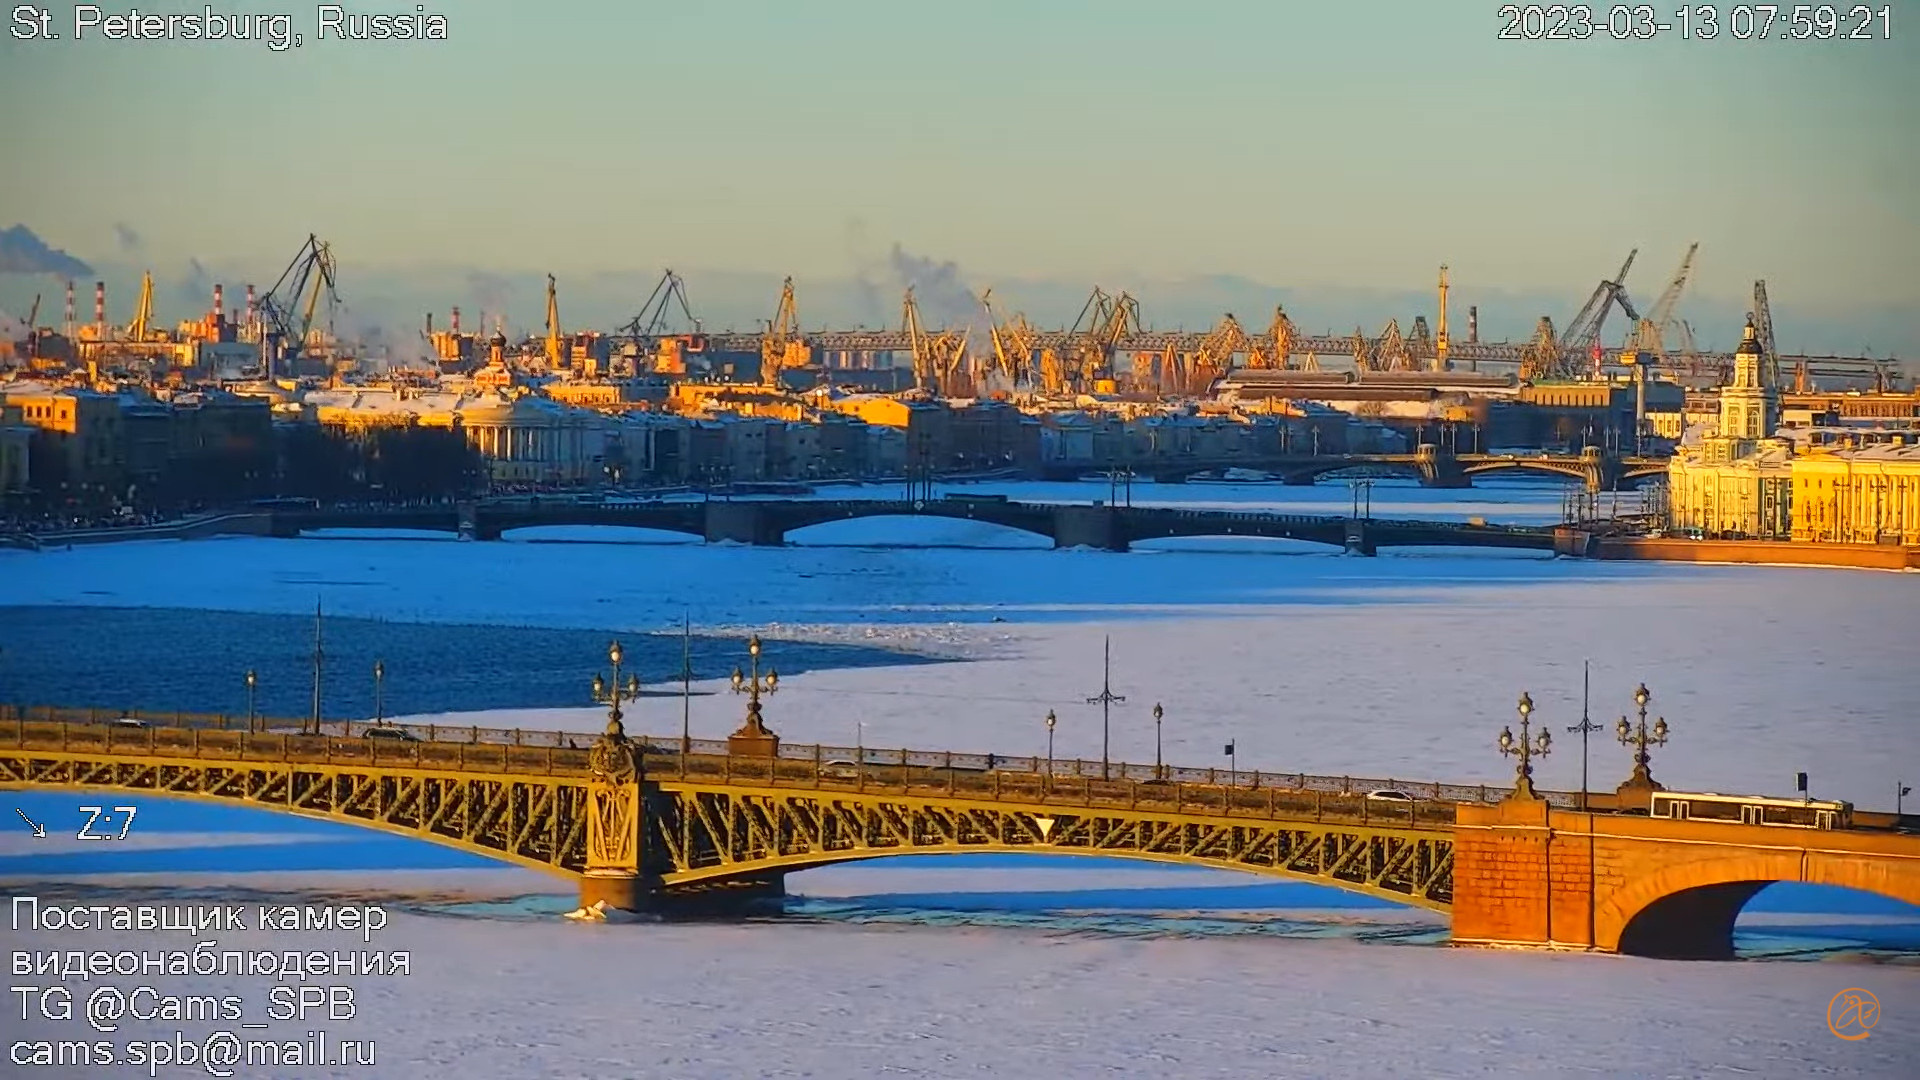 Хватайте солнце, оно ненадолго. Петербург отдыхает перед новым снегом, который в плюс 5 станет дождём